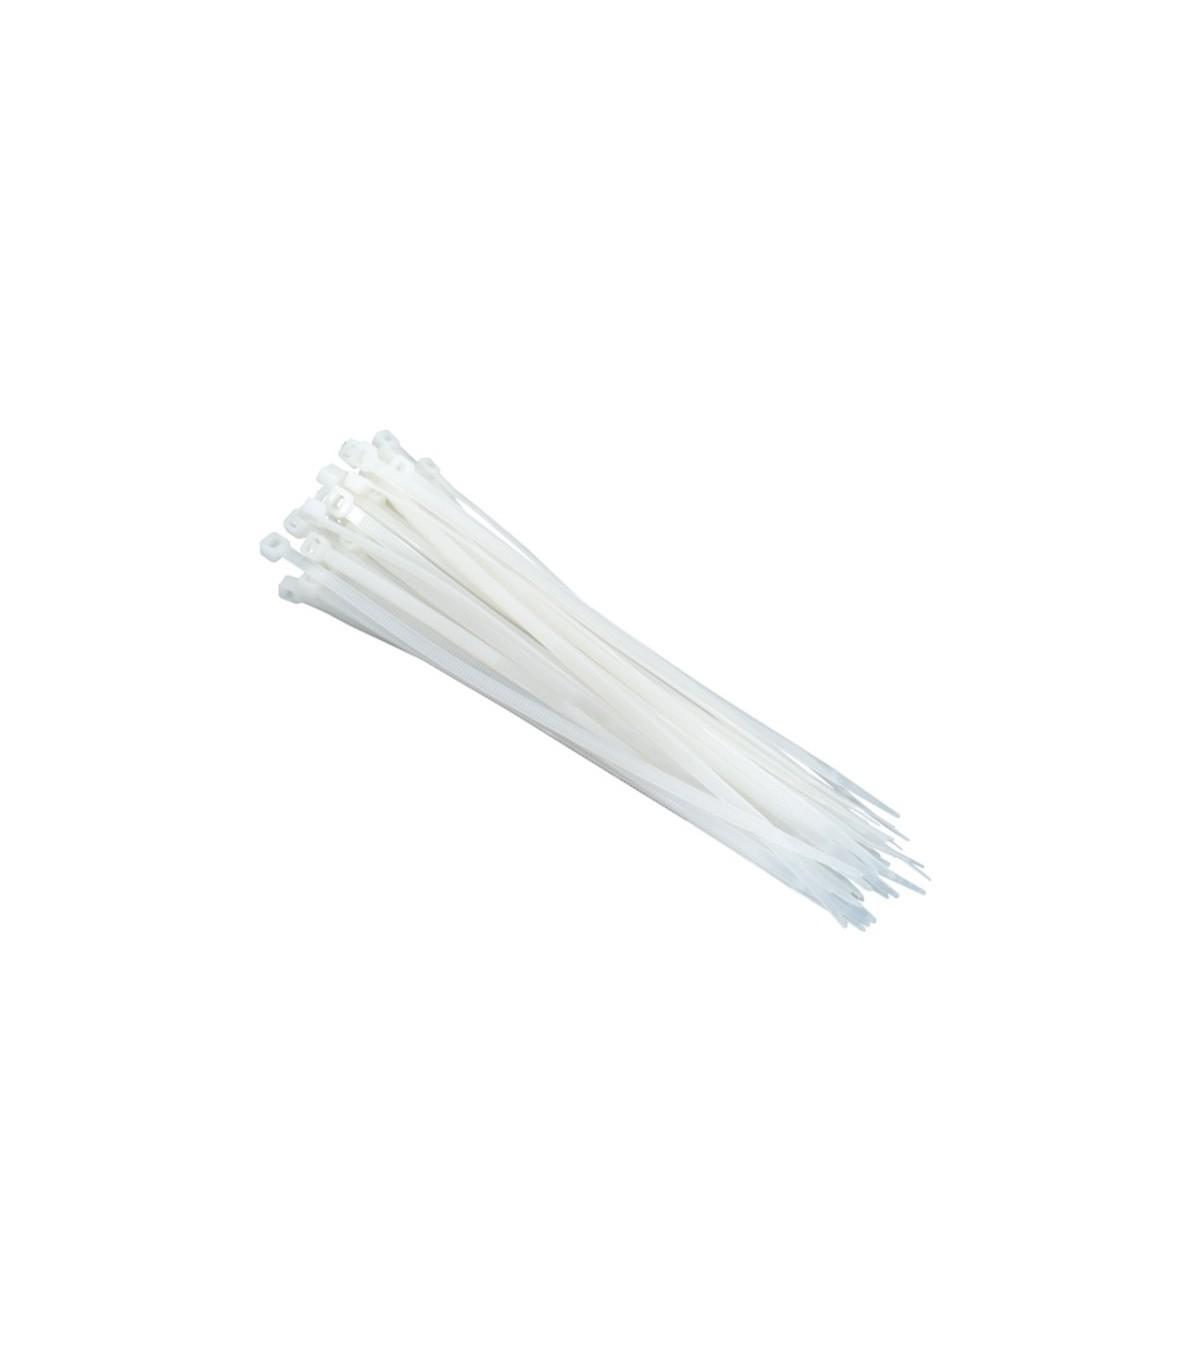 USE Plastične vezice CT 300/4.8 4.8 x 300 mm 25/1 bele